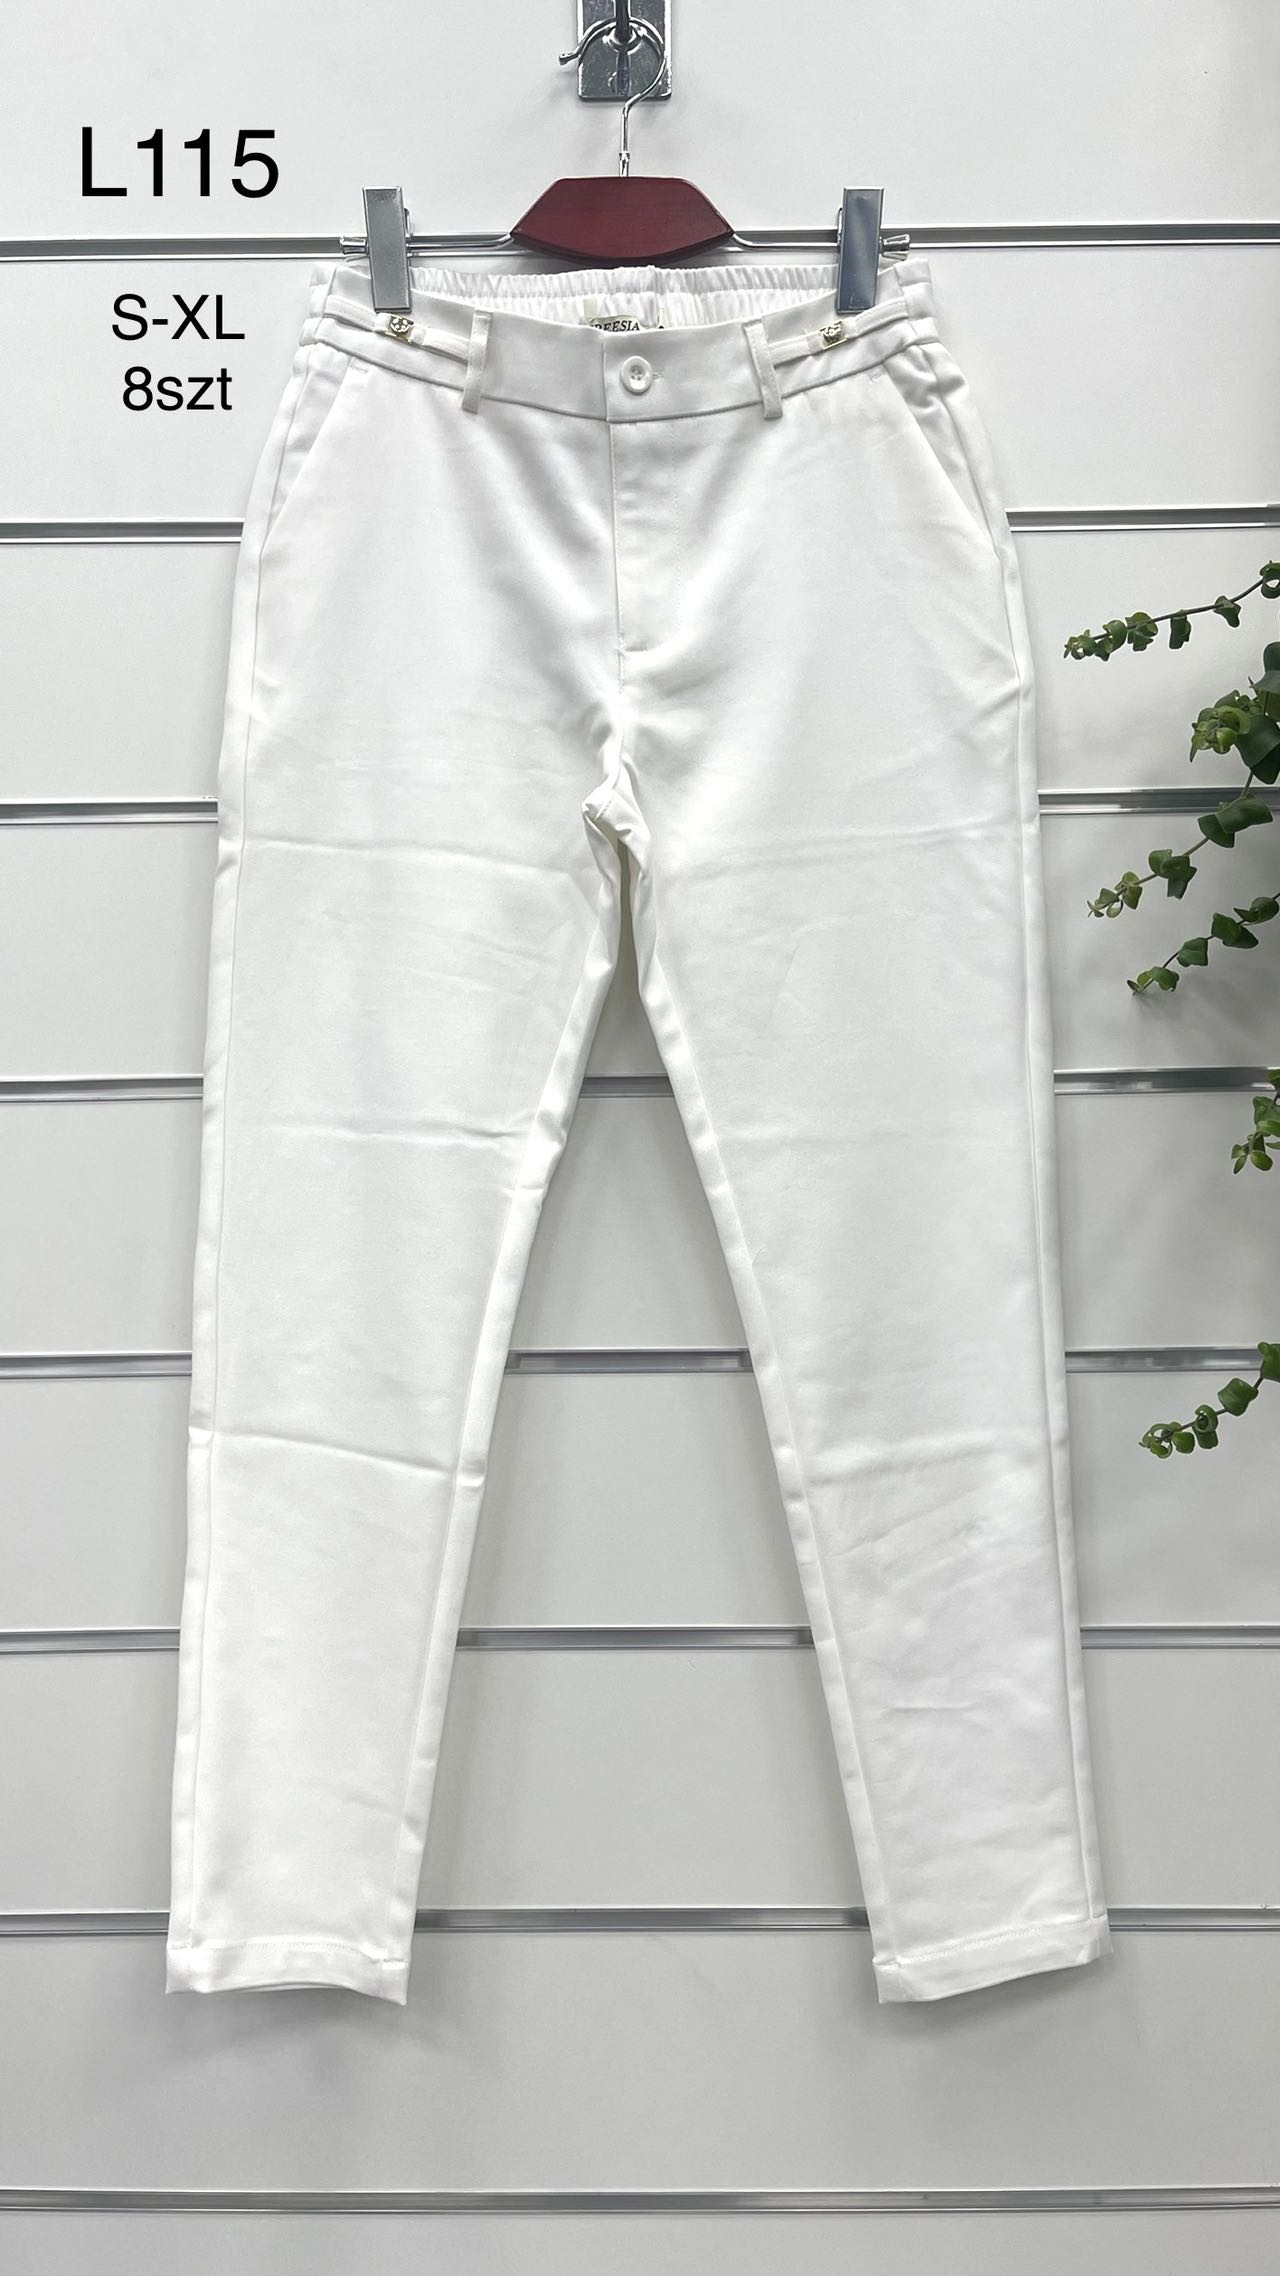 Spodnie  damskie materiałowe   Roz S-XL.  1 kolor . Paczka 8szt